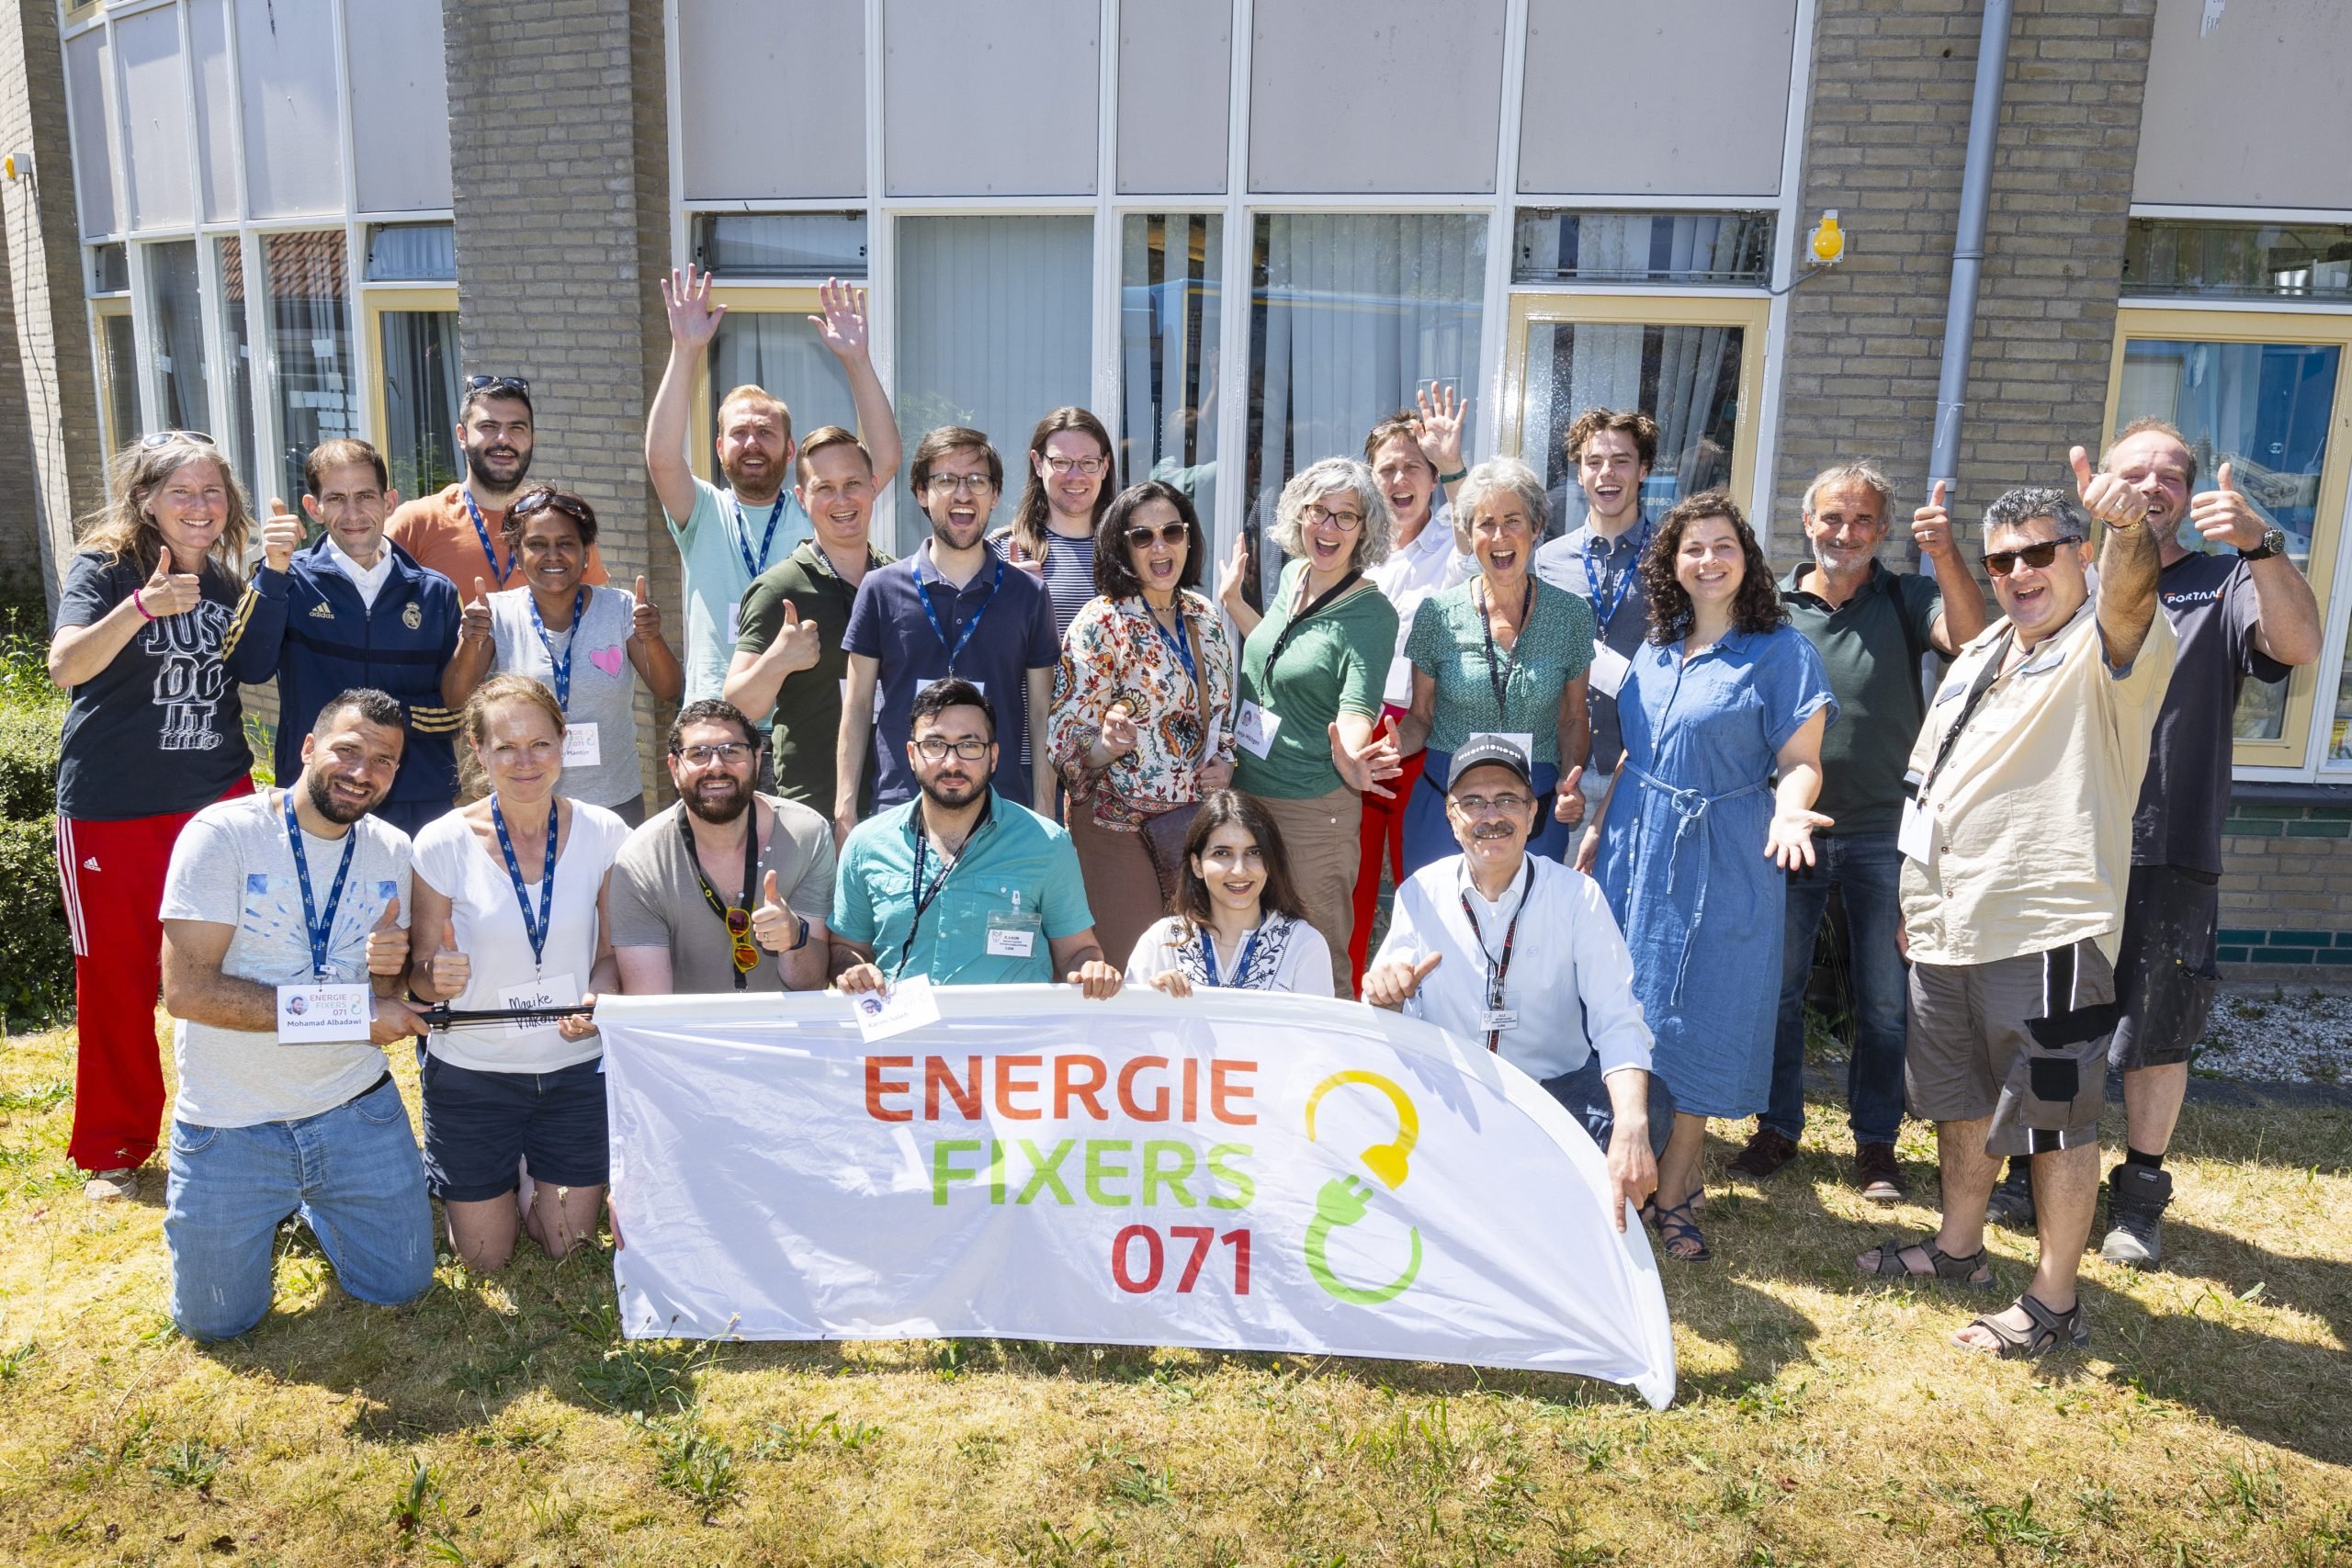 Energiefixers071 team